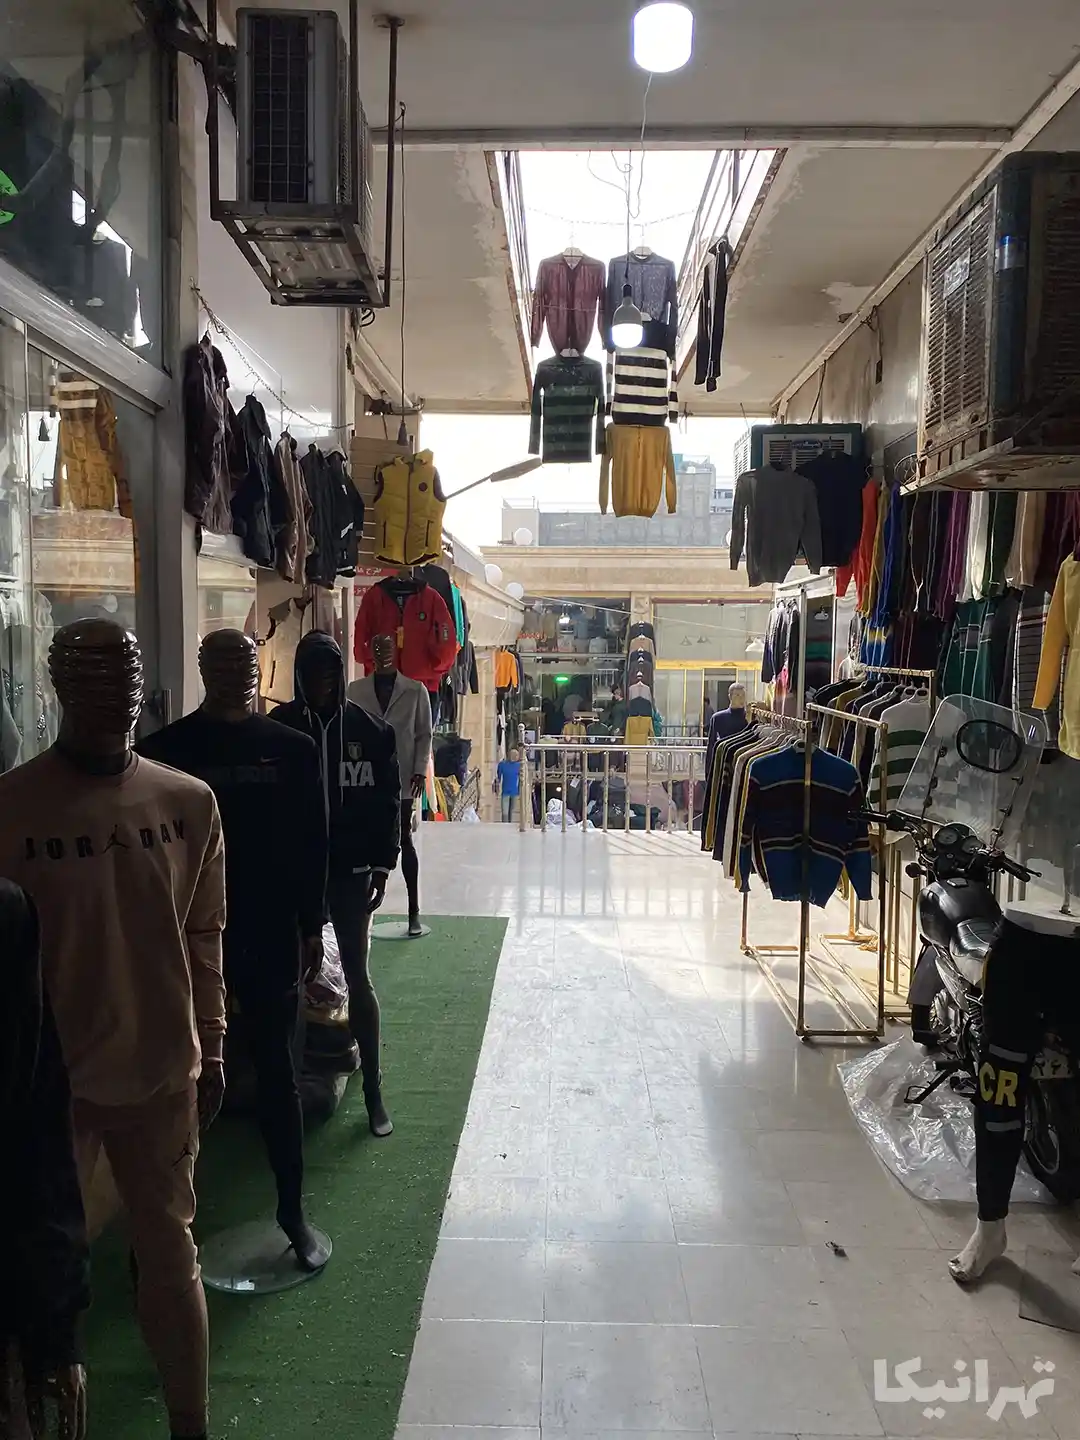 پوشاک مردانه چیده شده در سرتاسر ورودی پاساژ کریمی بازار